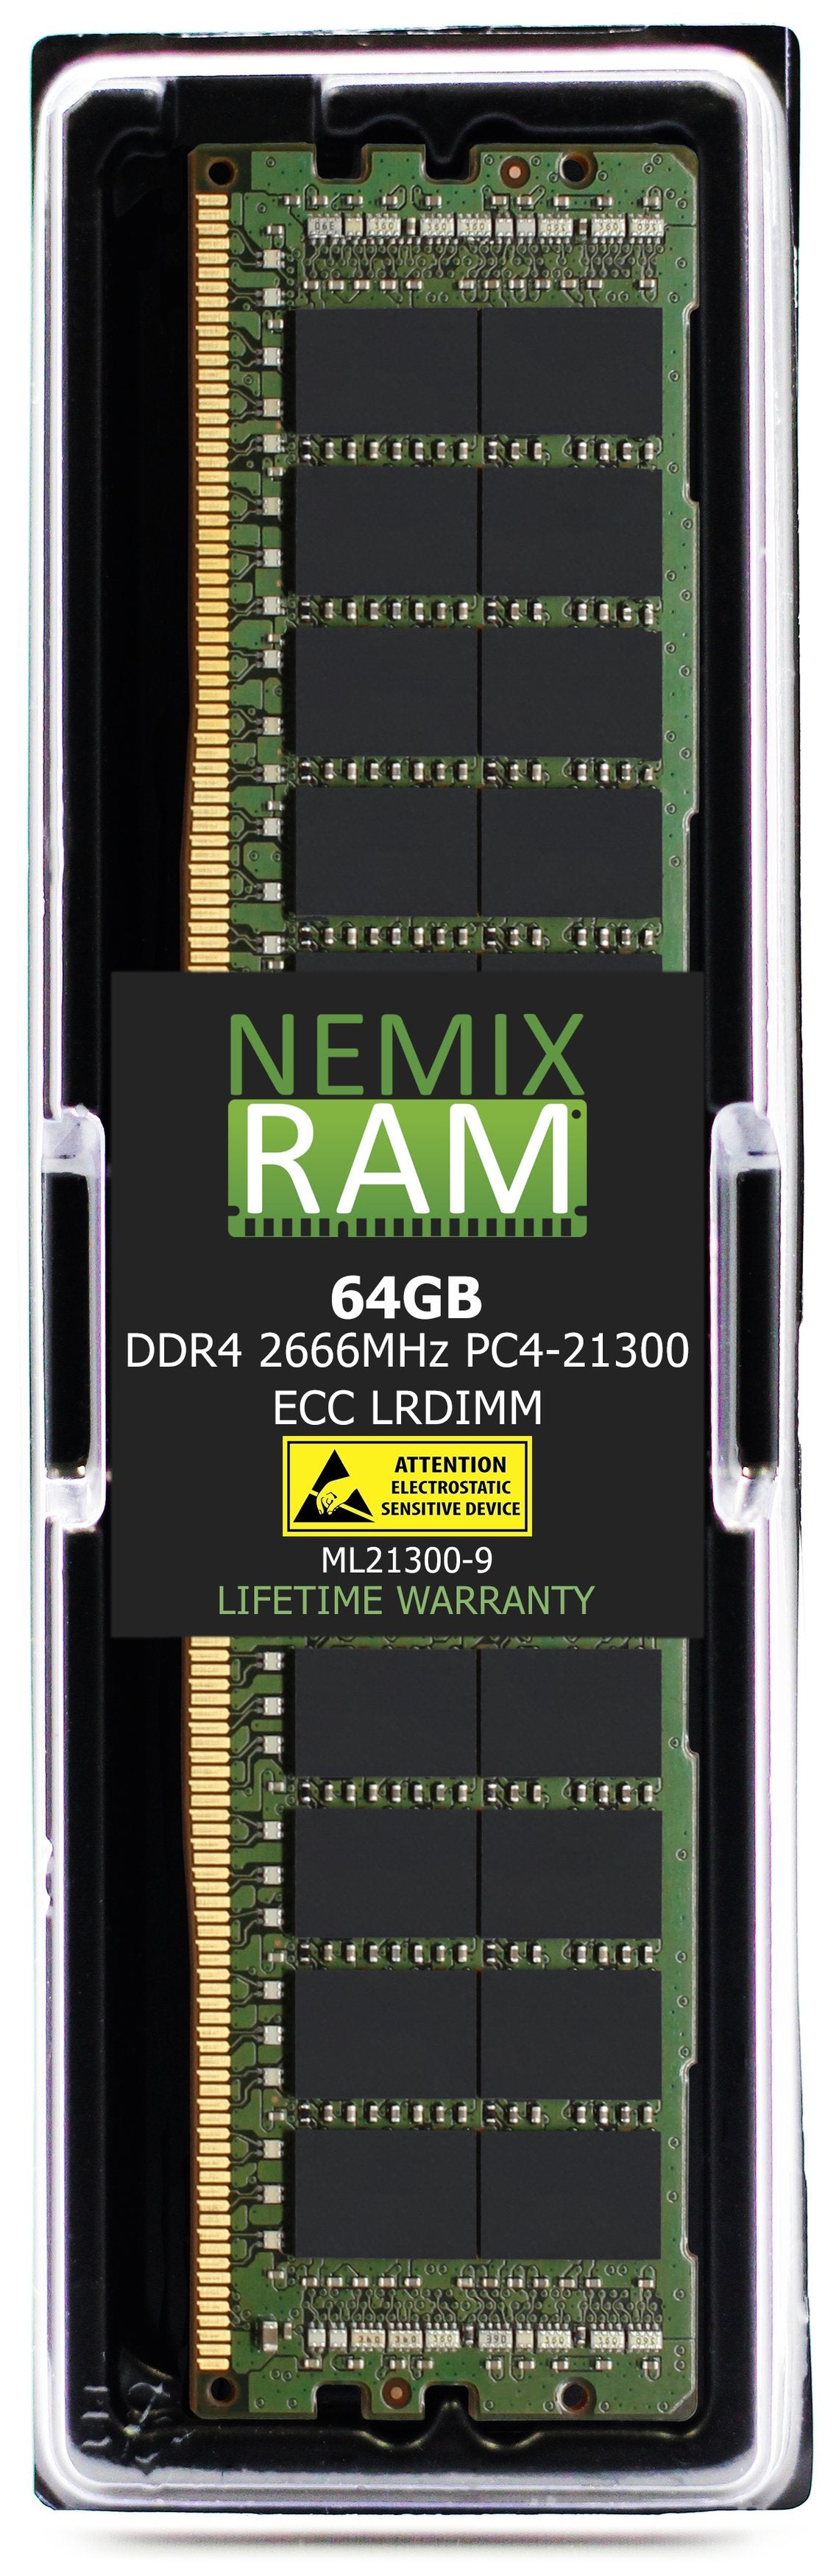 64GB DDR4 2666MHZ PC4-21300 LRDIMM Compatible with Supermicro MEM-DR464L-CL01-LR26